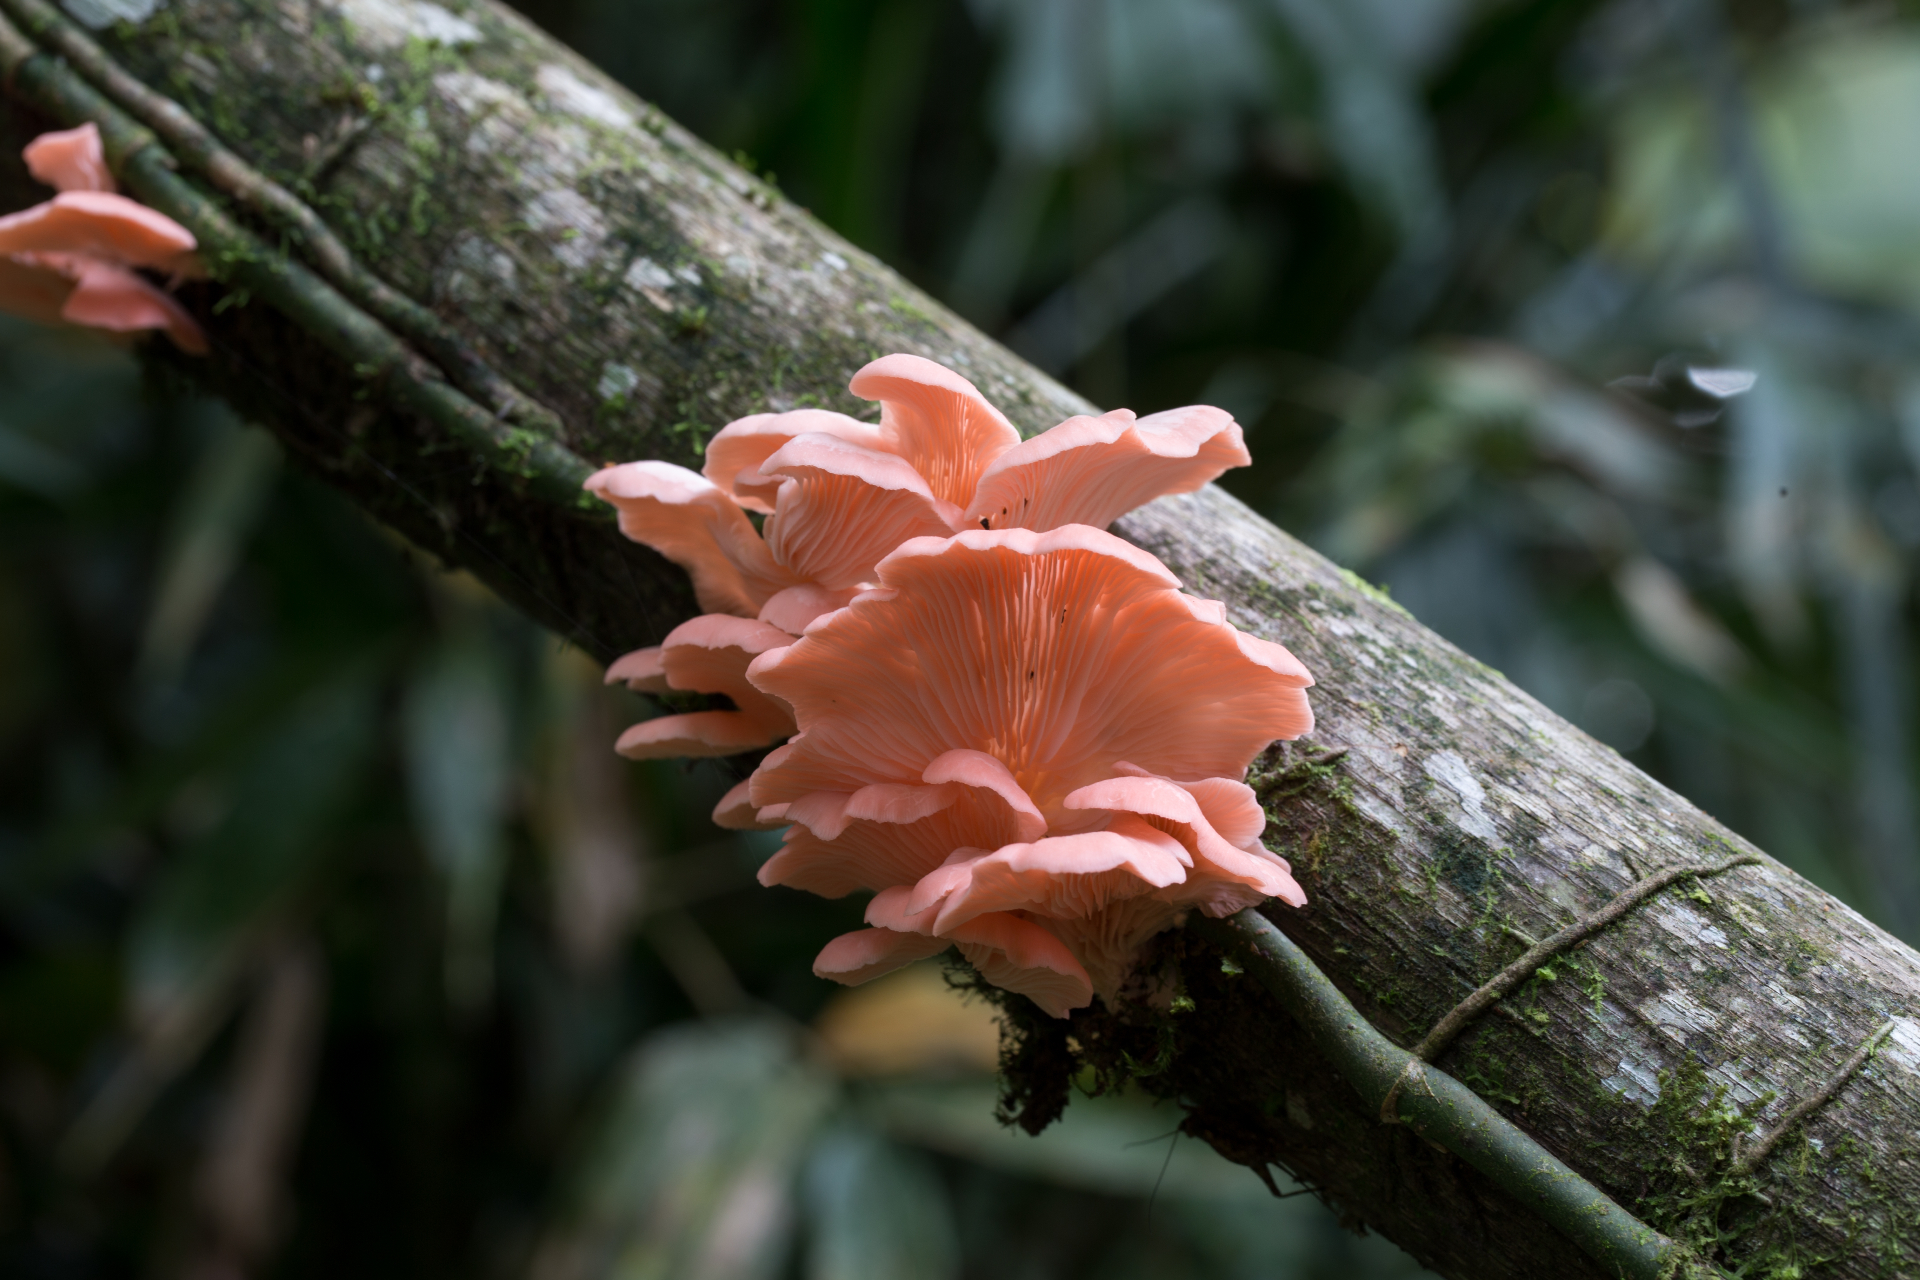 Розовая вешенка (Pleurotus djamor) из атлантических лесов в окрестностях Миракату, Бразилия. Древоразрушающие грибы играют важную роль в круговороте веществ и балансе лесных экосистем. Плодовые тела гриба съедобны для человека, в природе служат пищей разнообразным насекомым.